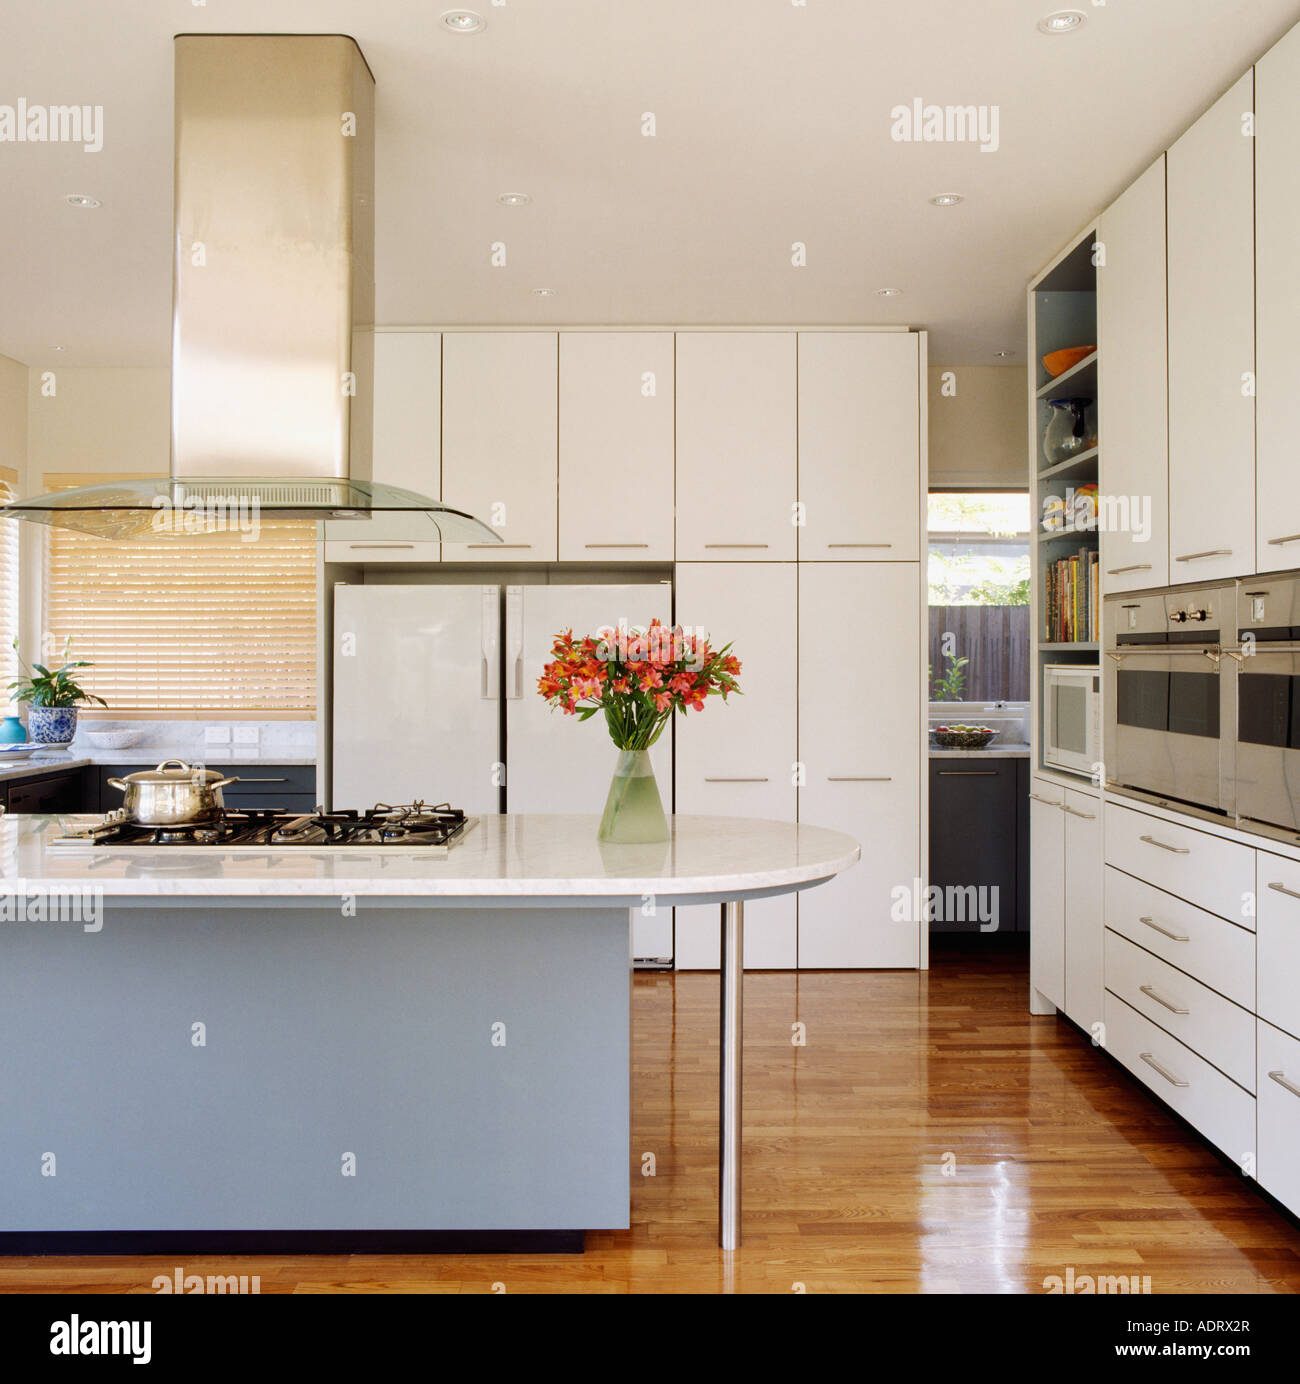 Cappa al di sopra del piano di cottura in blue island unità in bianca e moderna cucina con pavimento in legno lucido Foto Stock